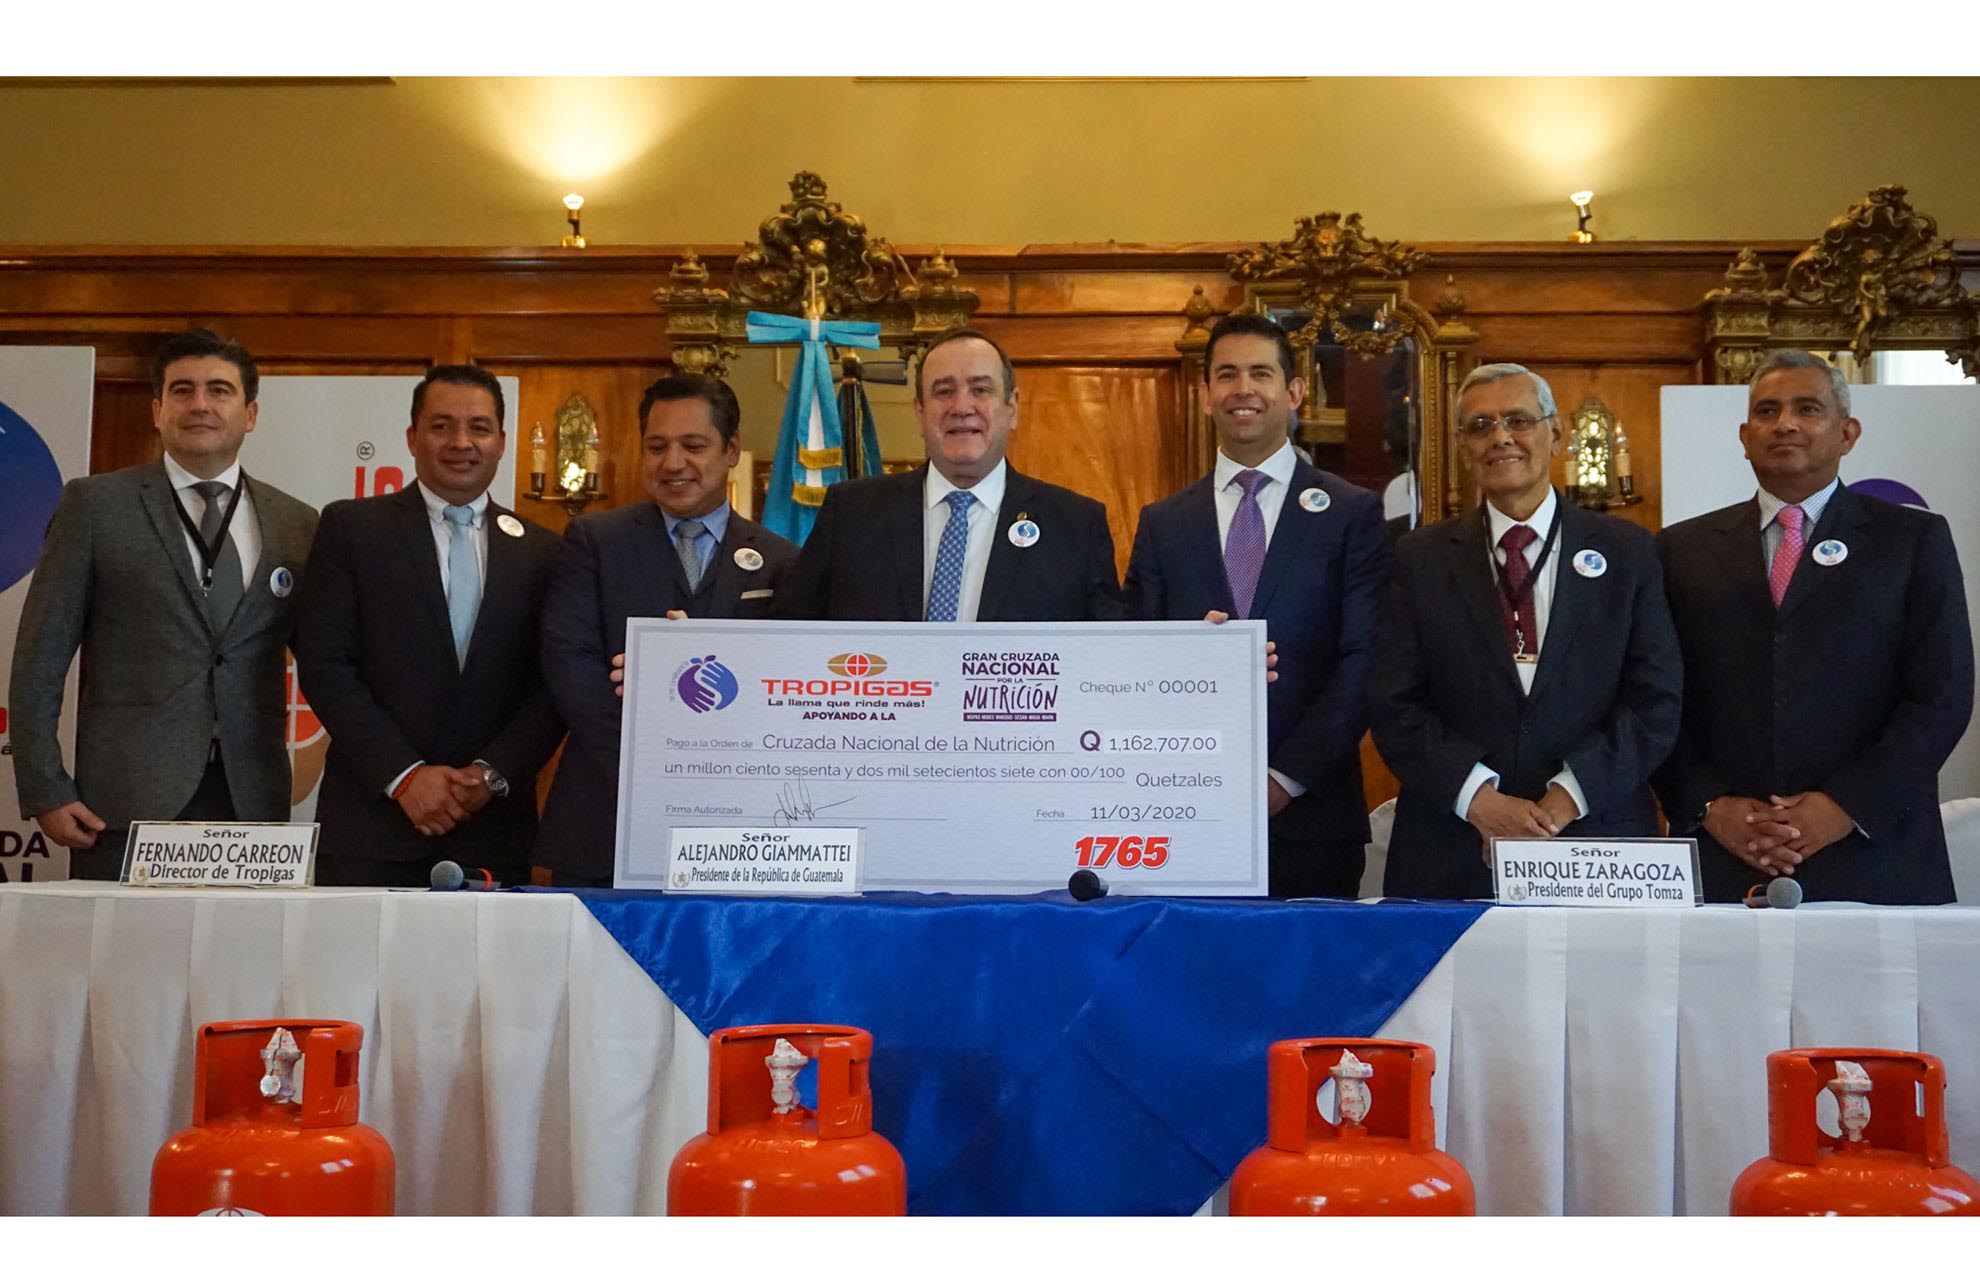 Grupo Tomza entregó donativo equivalente a lo vendido desde el 14 de enero del 2020, cuando Giammattei tomó posesión de la presidencia de la Republica de Guatemala e inició así, la Cruzada Nacional por la Nutrición.